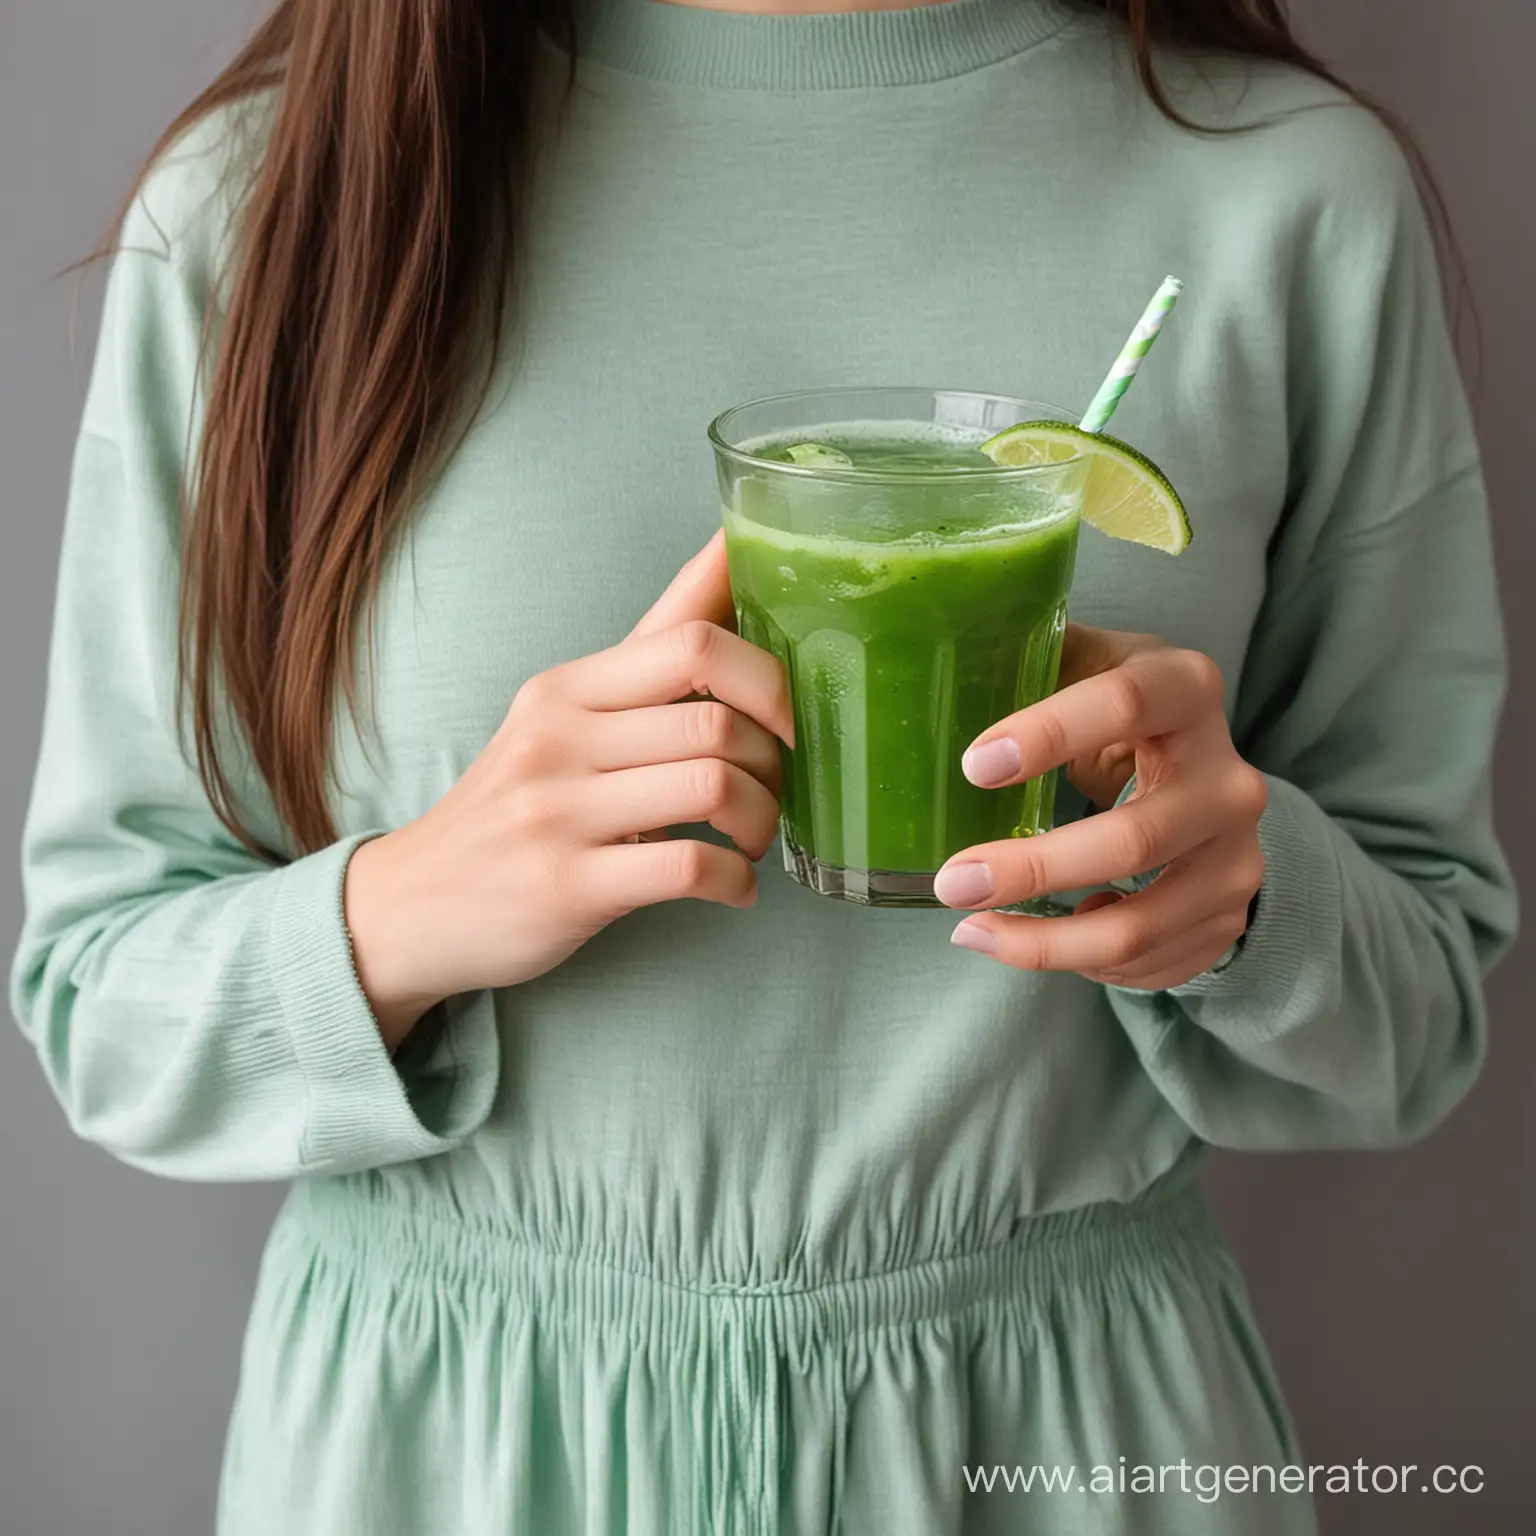 девущка в руке держит зеленый со сликами напиток здоровый образ жизни